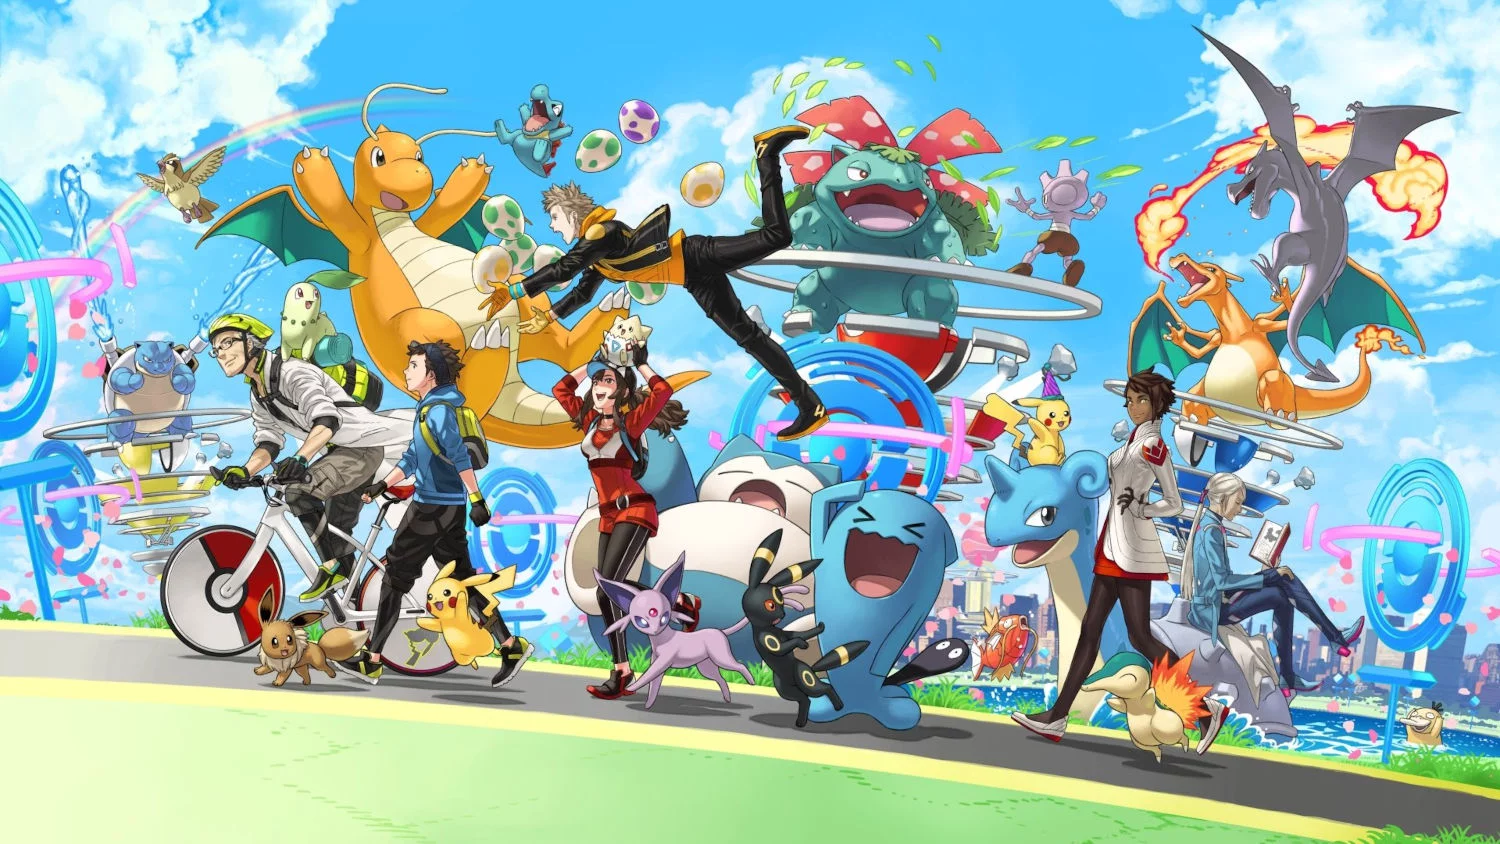 Jogada Excelente on X: Treinadores, um novo visual inspirado no Galaxy A  Series está disponível para resgate gratuitamente. ⠀ Resgate este avatar  agora no Pokémon GO utilizando o código: KUAXZBJUTP3B7 ⠀ Para